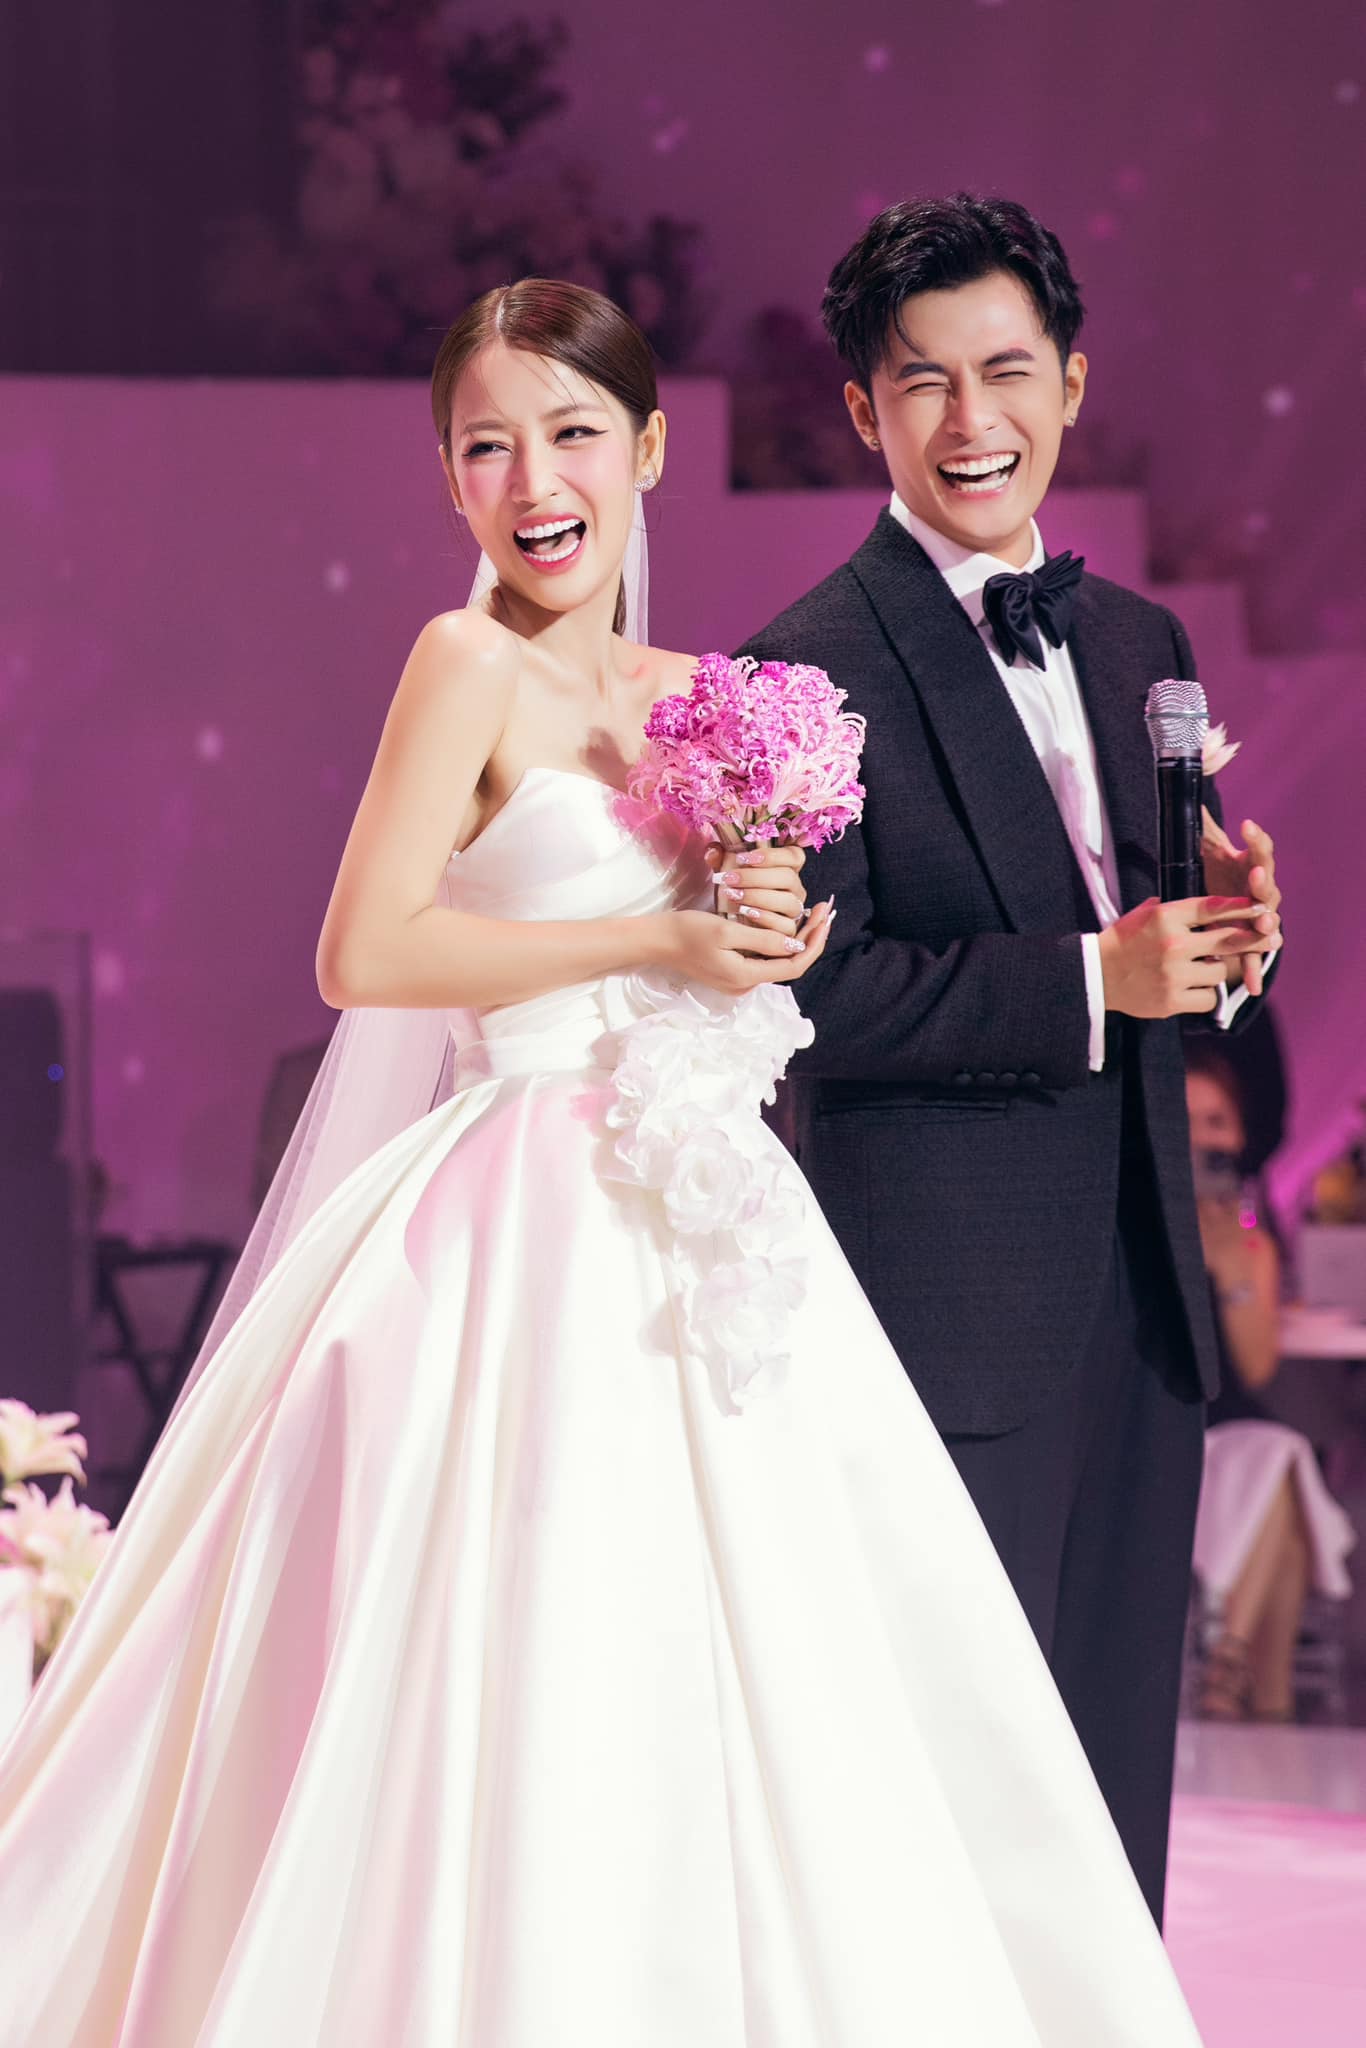 Puka - Gin Tuấn Kiệt thông báo 'tin vui' ngay sau đám cưới cô dâu xúc động, khán giả chúc mừng